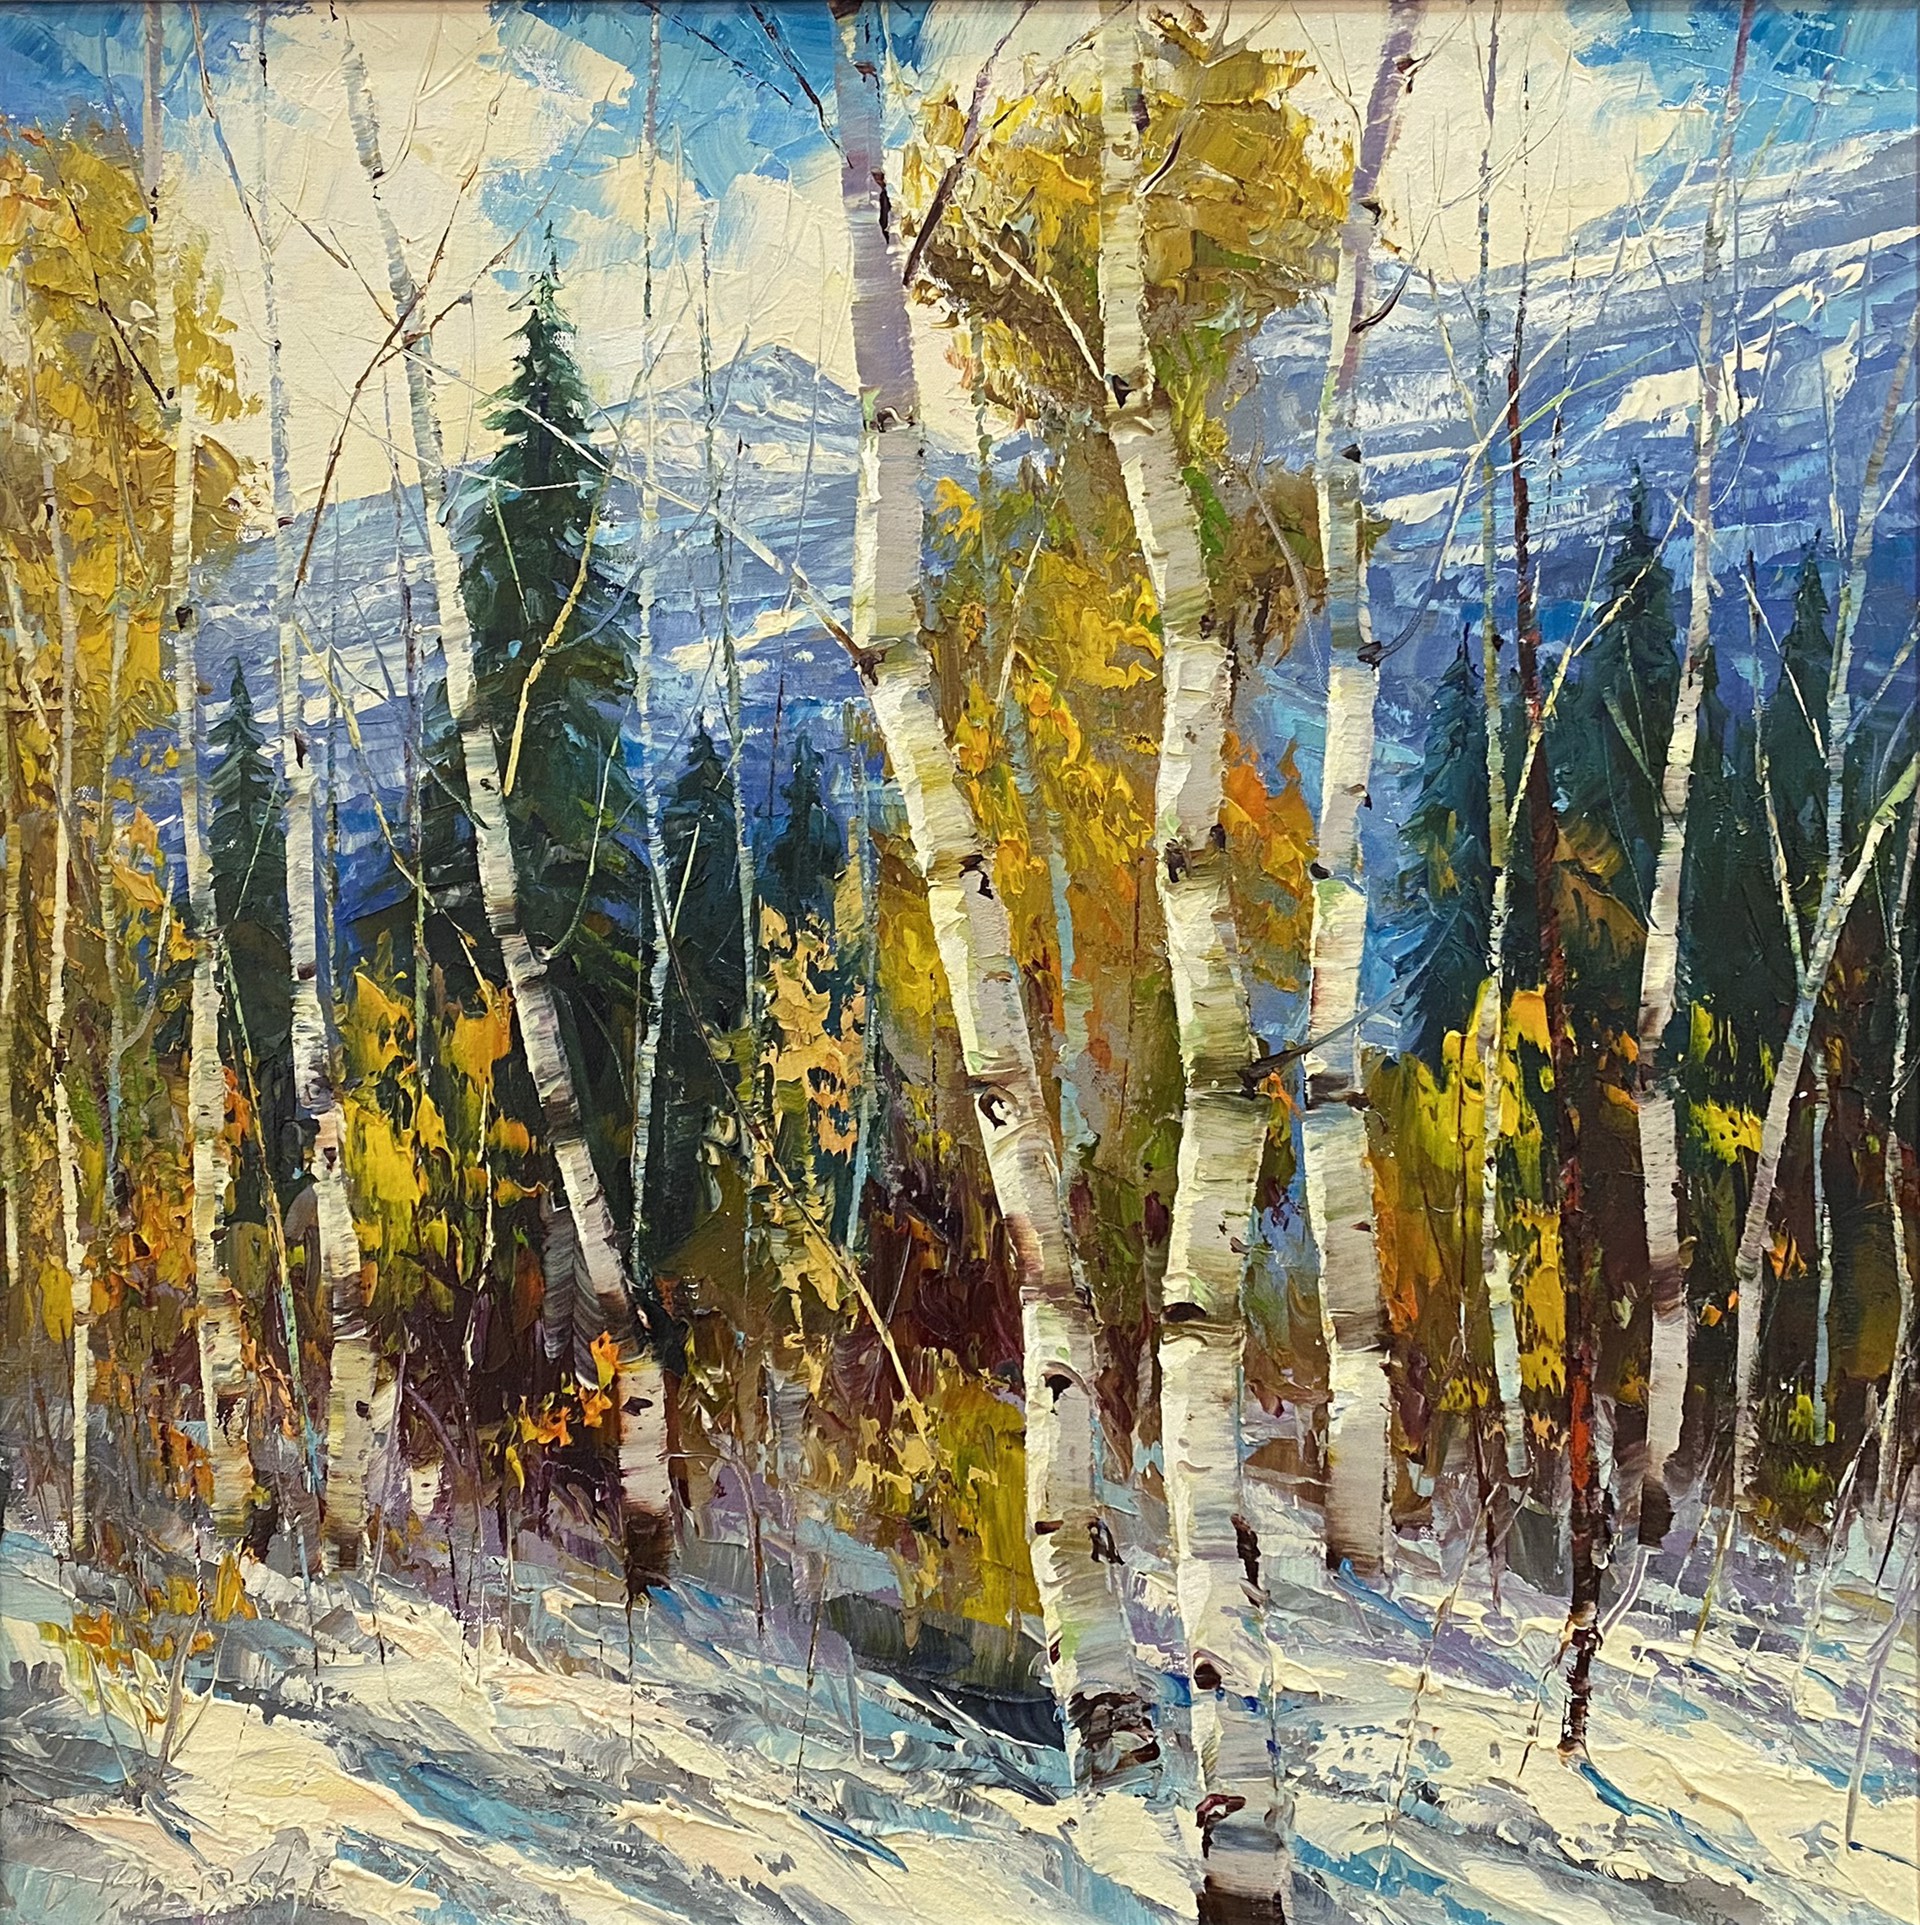 Winter Joy by DEAN BRADSHAW